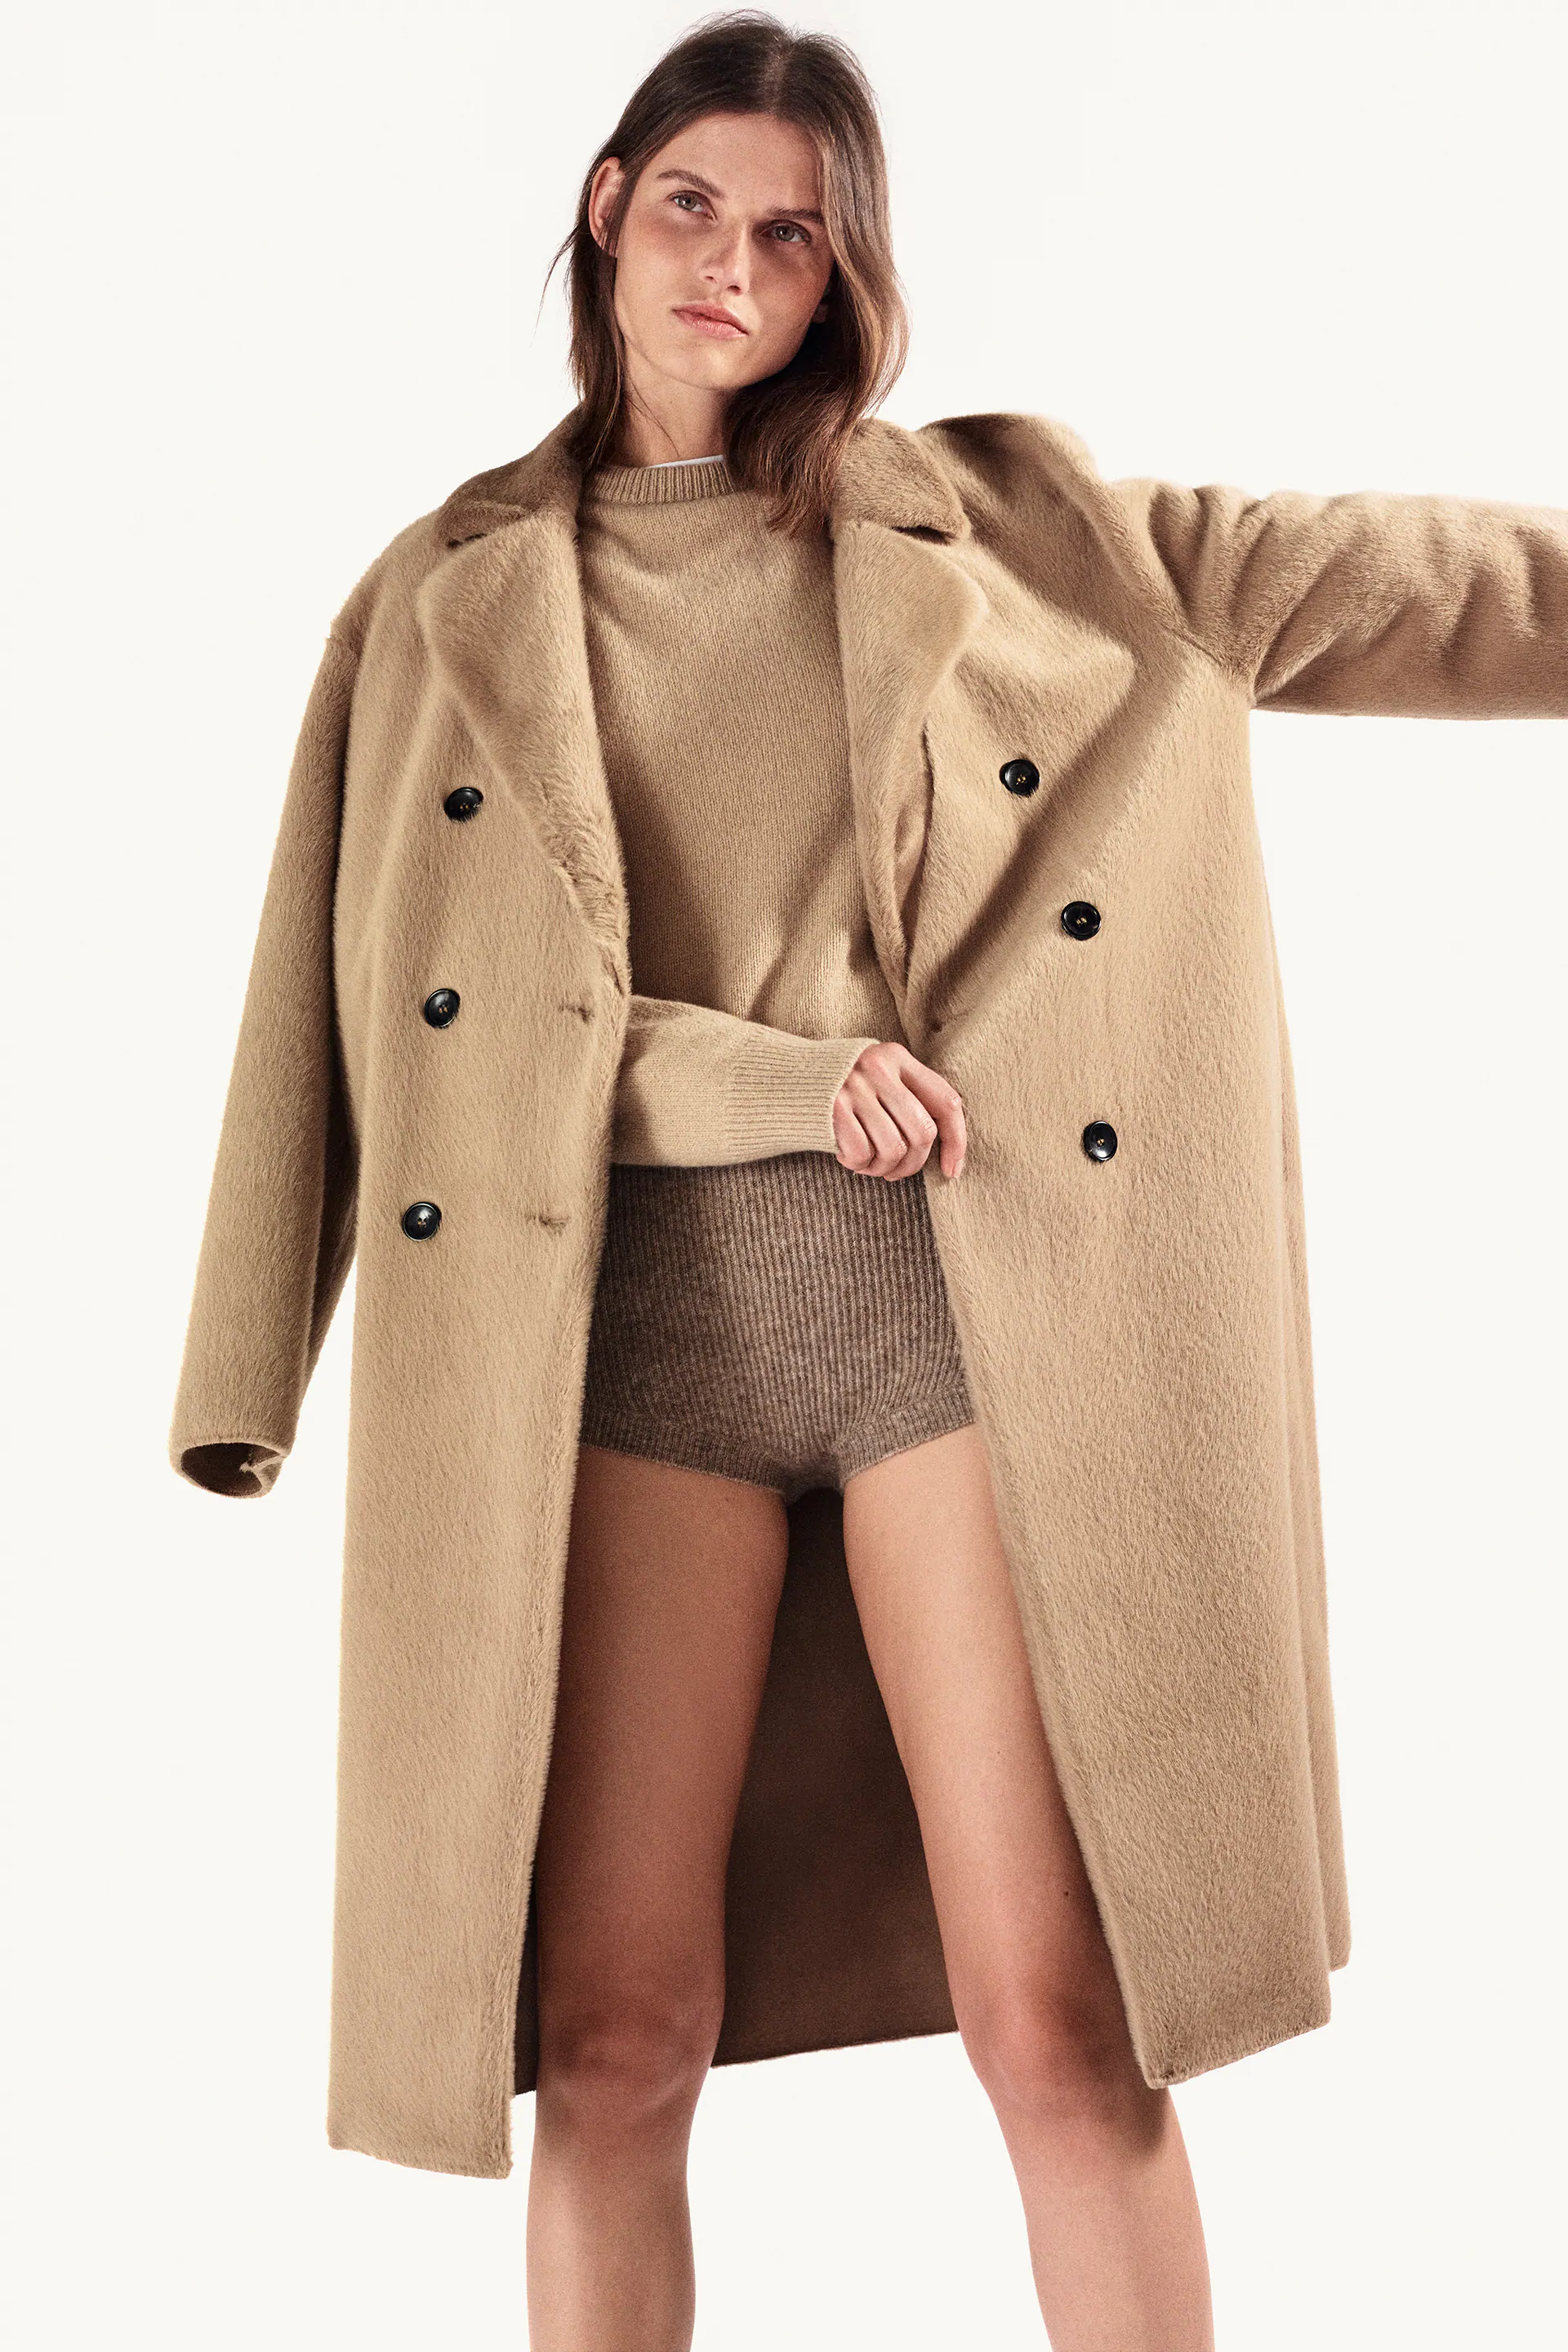 The 18 Best Zara Jackets And Coats Of, Zara Winter Coats 2021